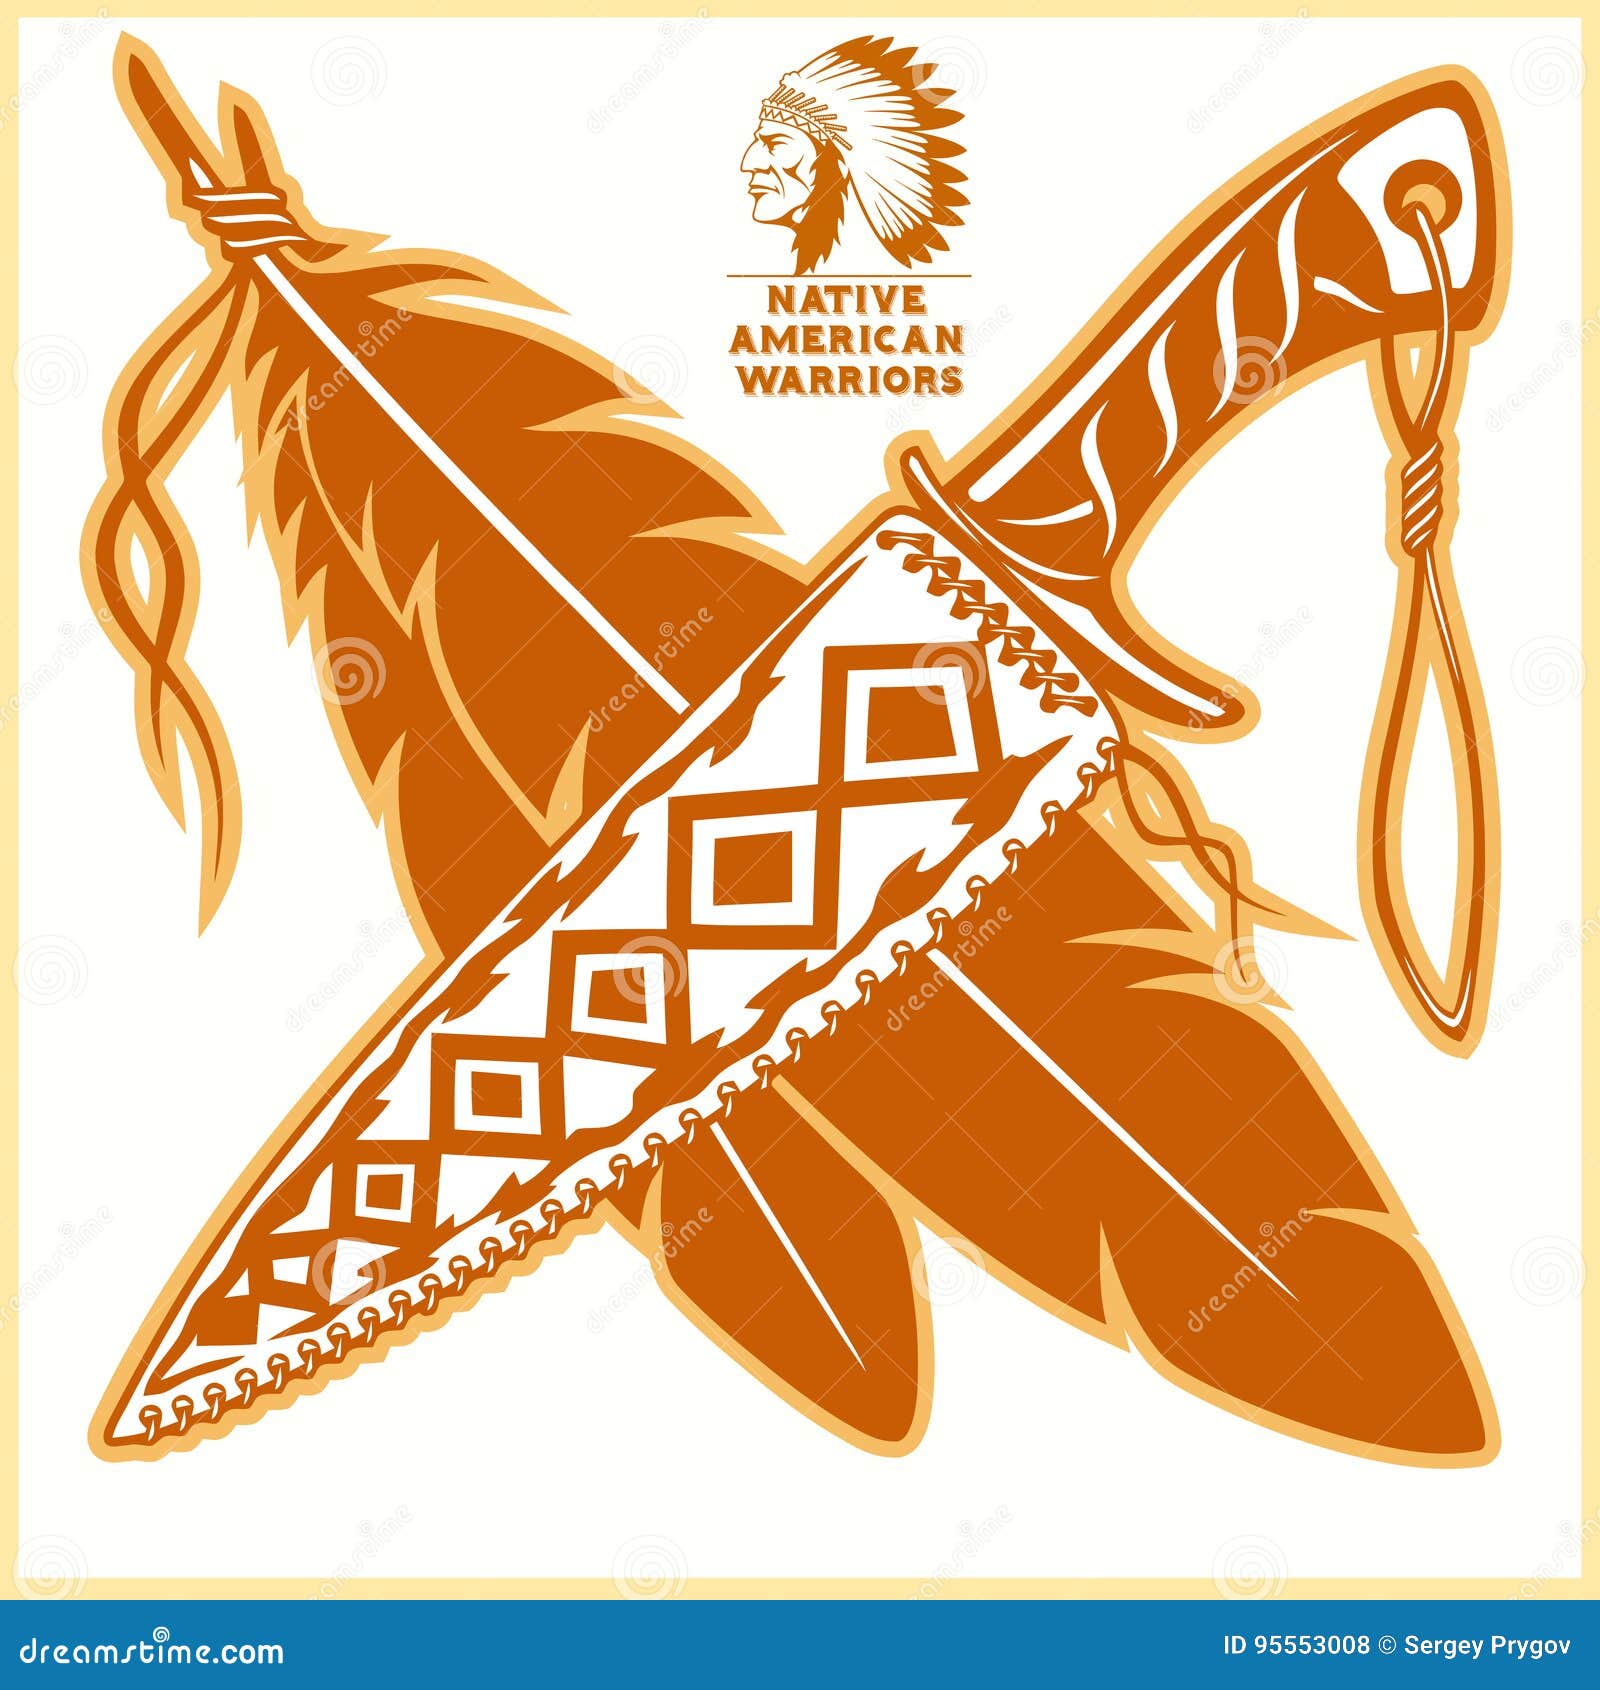 Герб индейца. Эмблема индейцев. Индеец логотип. Индеец векторное изображение. Символы индейцев Апачи.